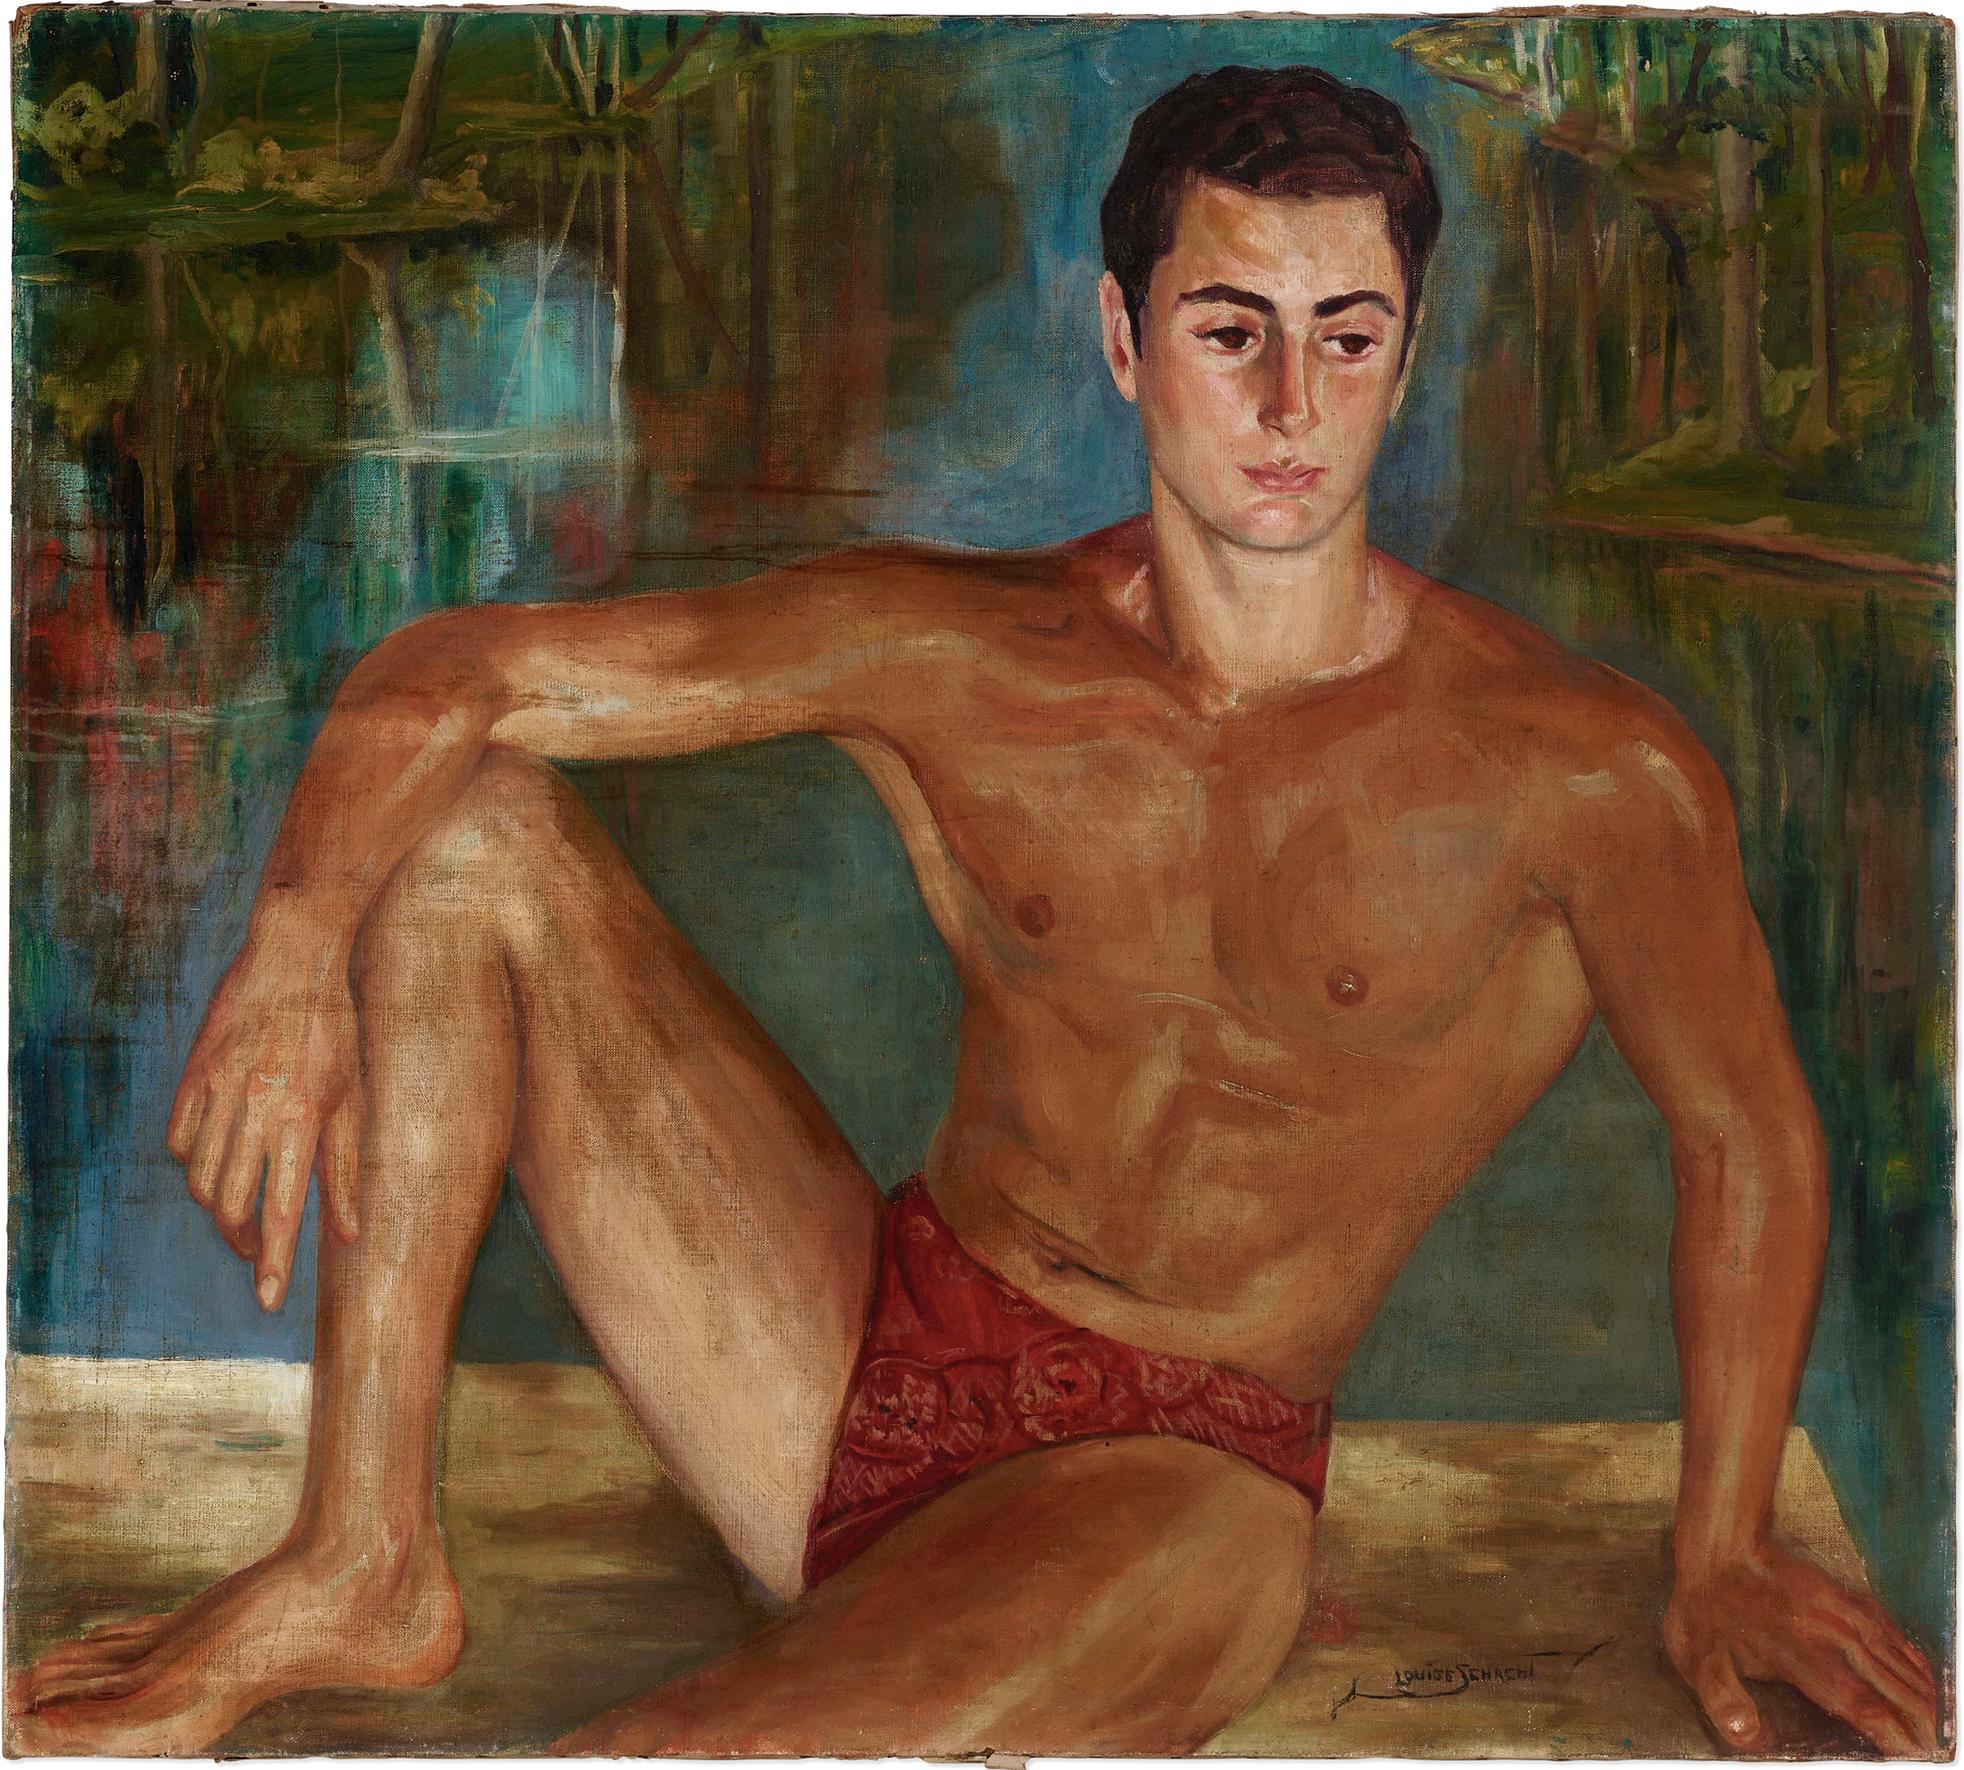 Nude Man In Bathing Suit,  Male Nude in Speedo, Gay art,  Sex appeal